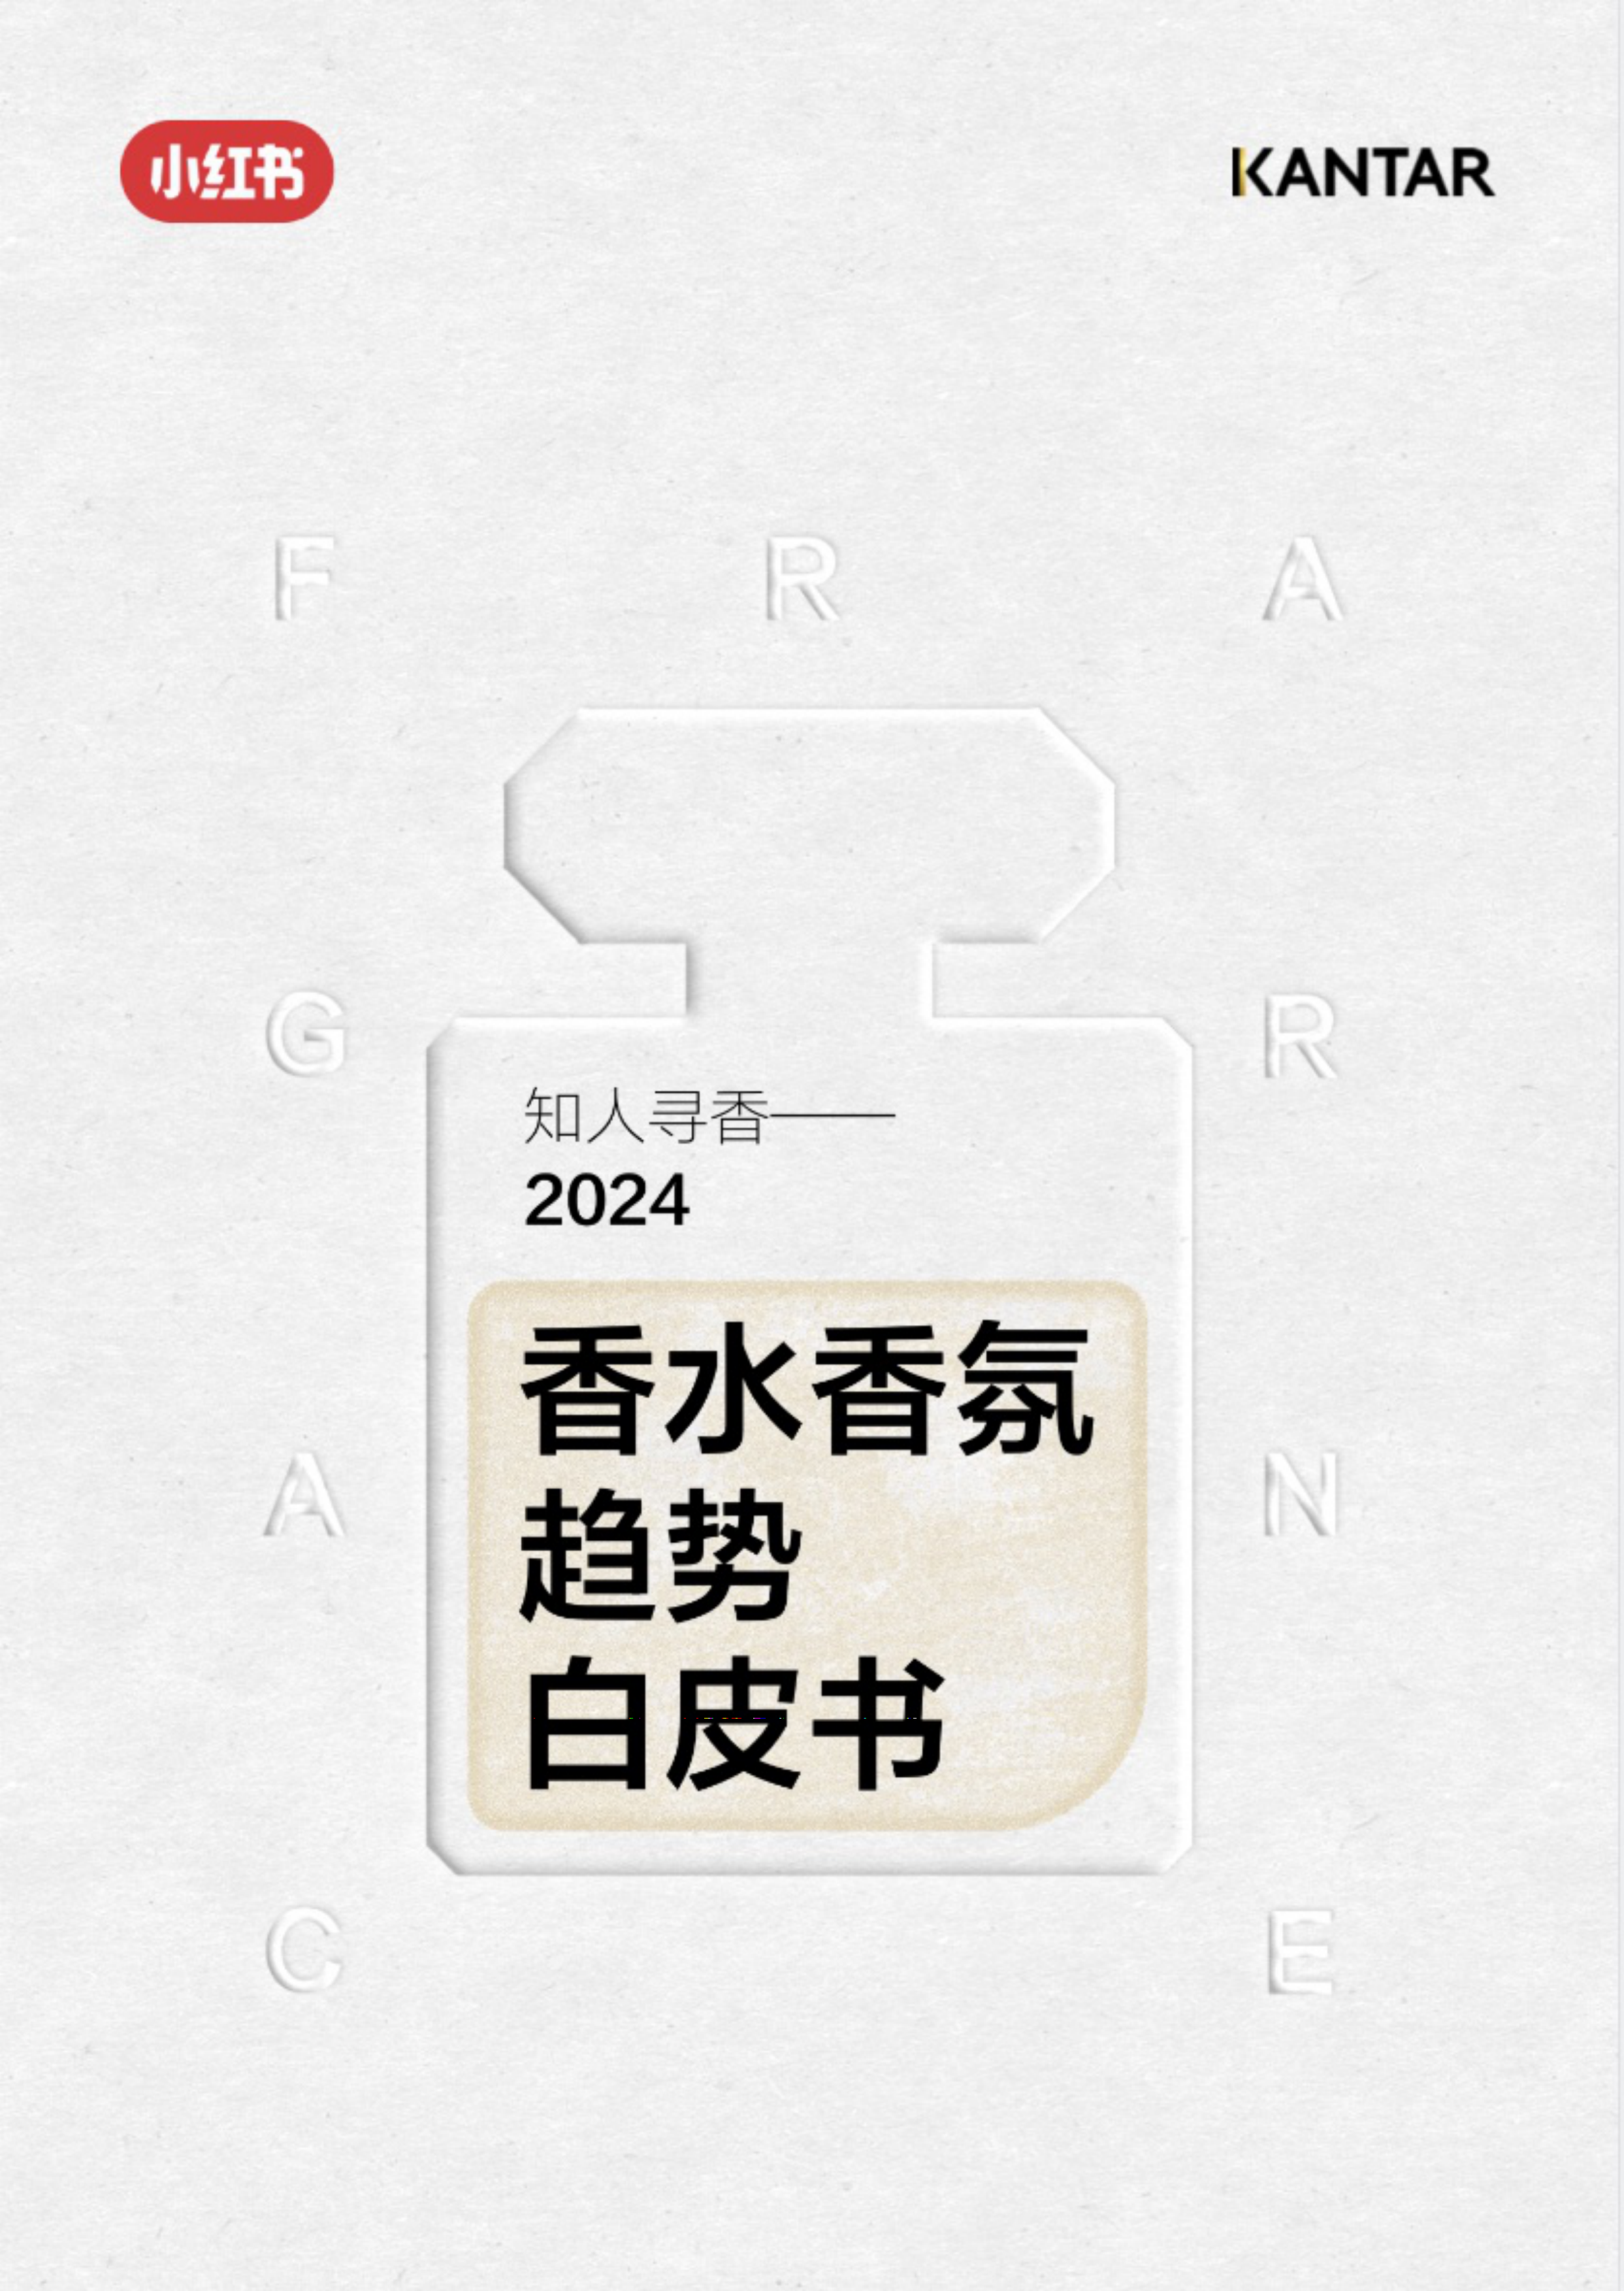 知人寻香—2024香水香氛趋势白皮书-小红书x凯度-202404.pdf